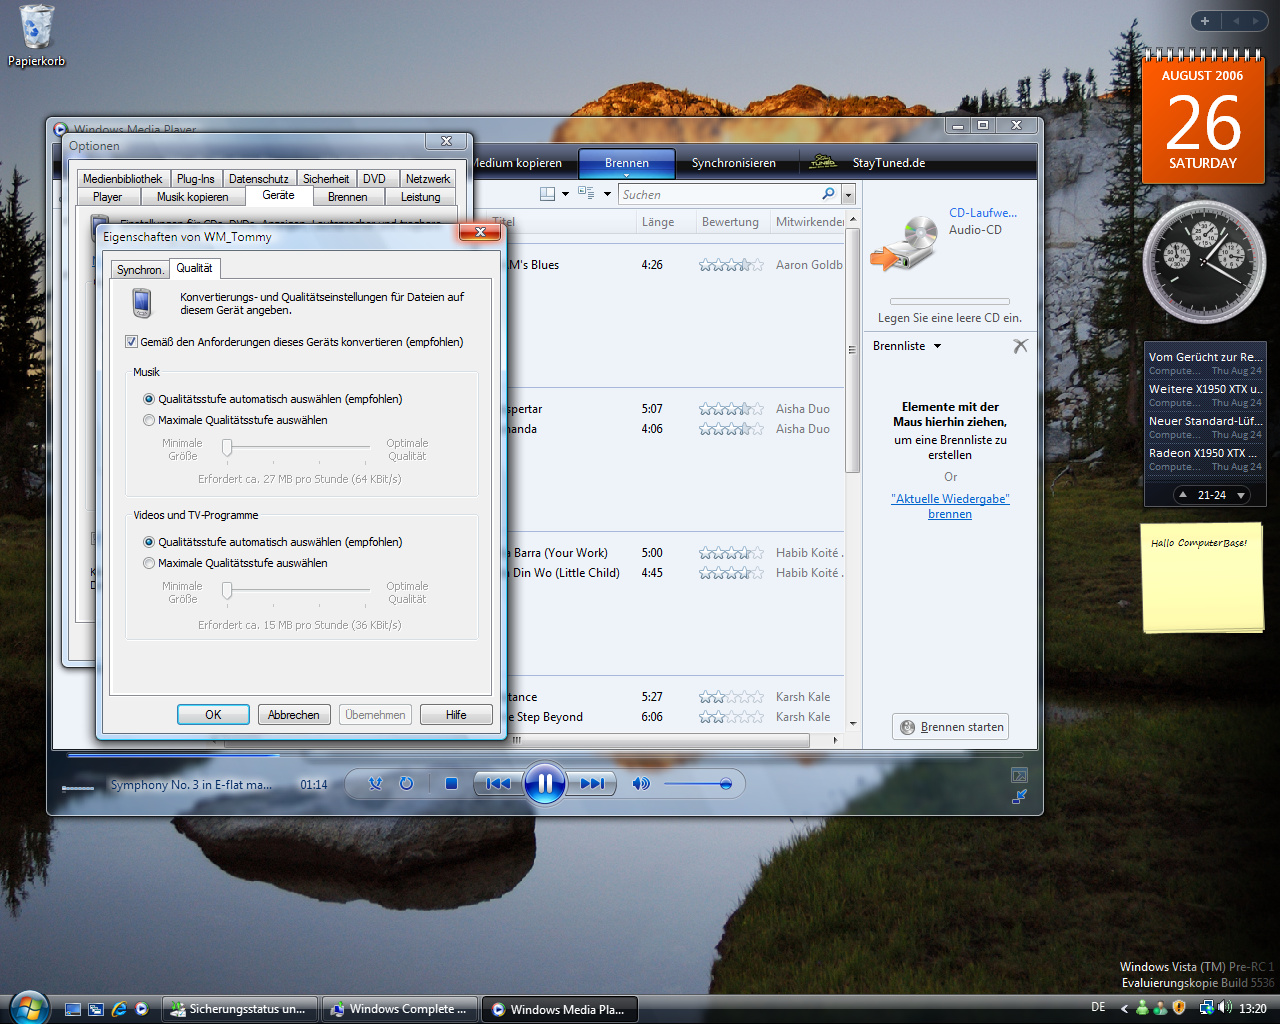 Windows Vista Build 5536 - Media Player 11 - Synchronisitation fuer jedes Geraet getrennt einstellbar